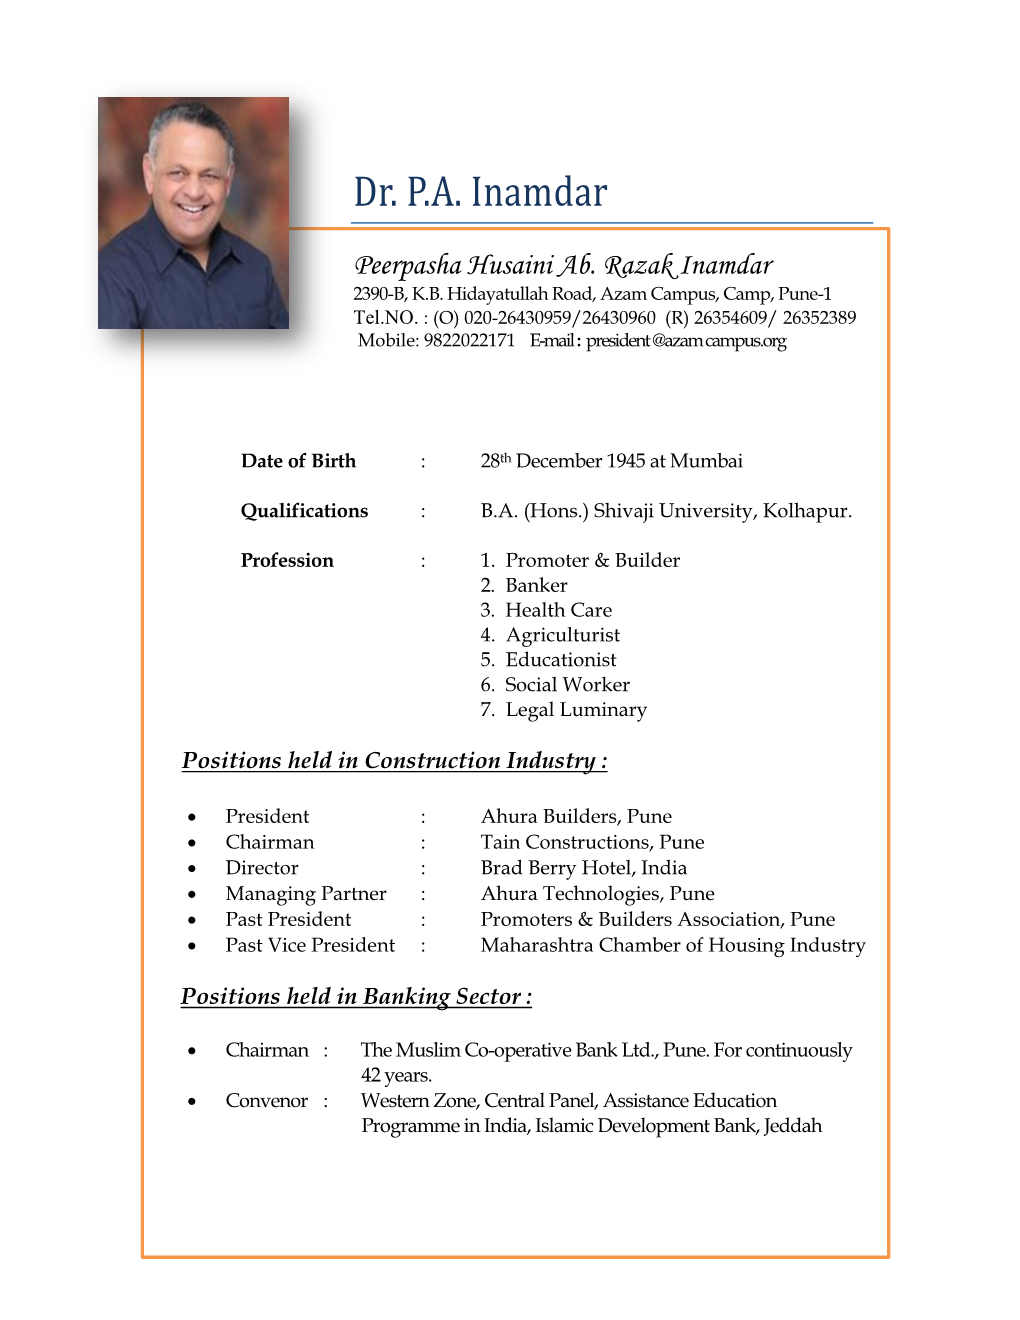 Dr. PA Inamdar